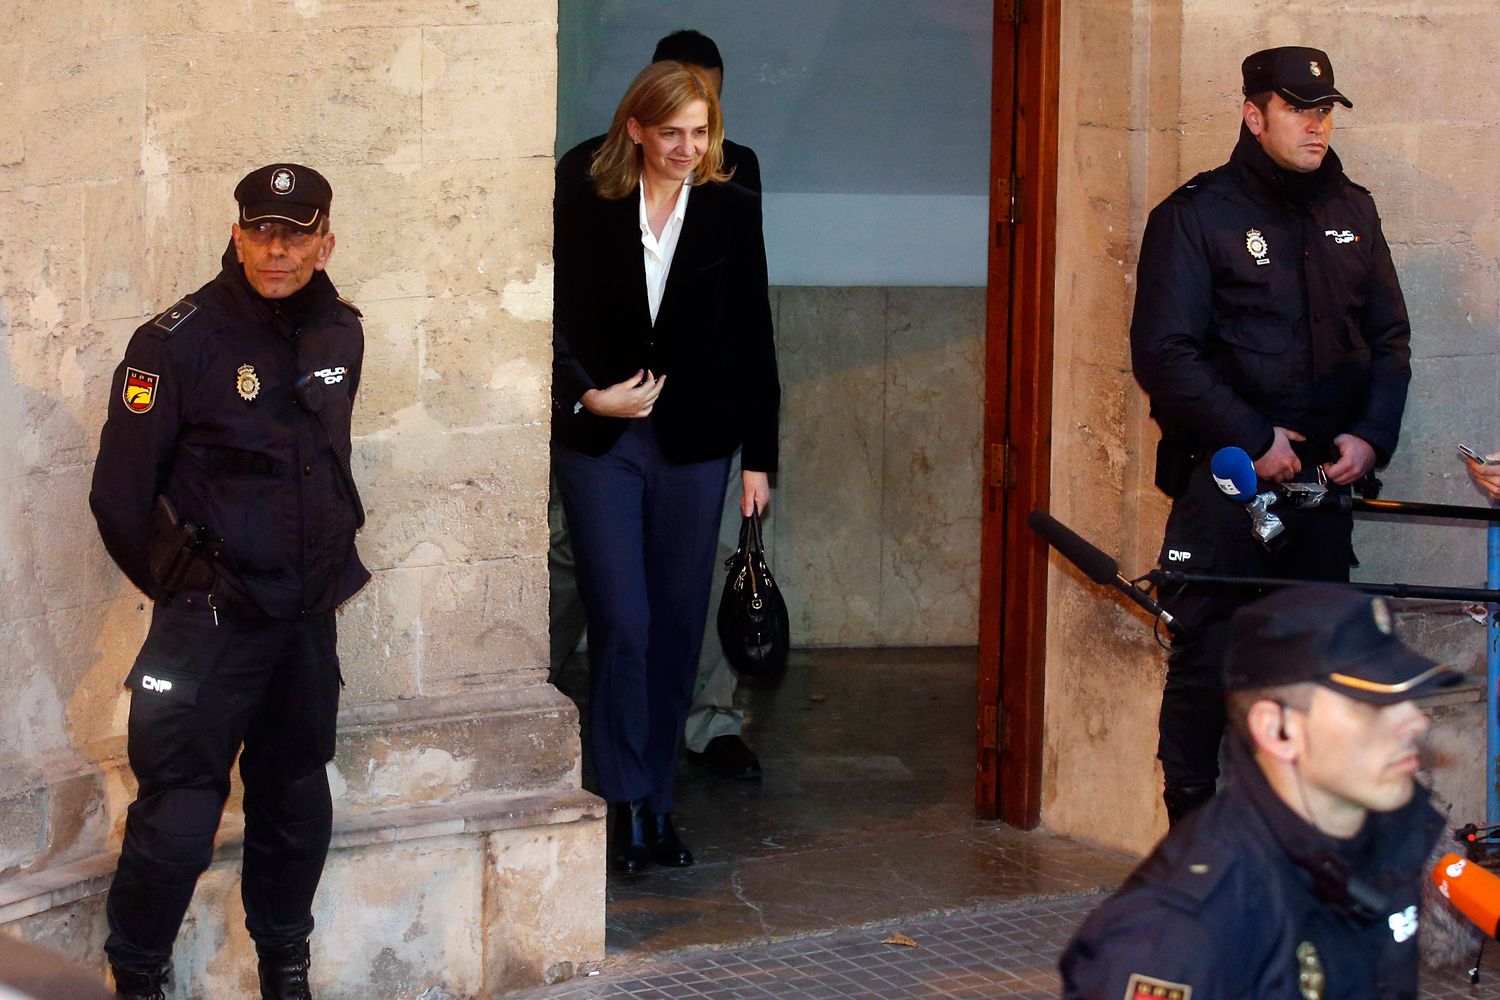 La Infanta Cristina imputada por delito fiscal y blanqueo de capitales